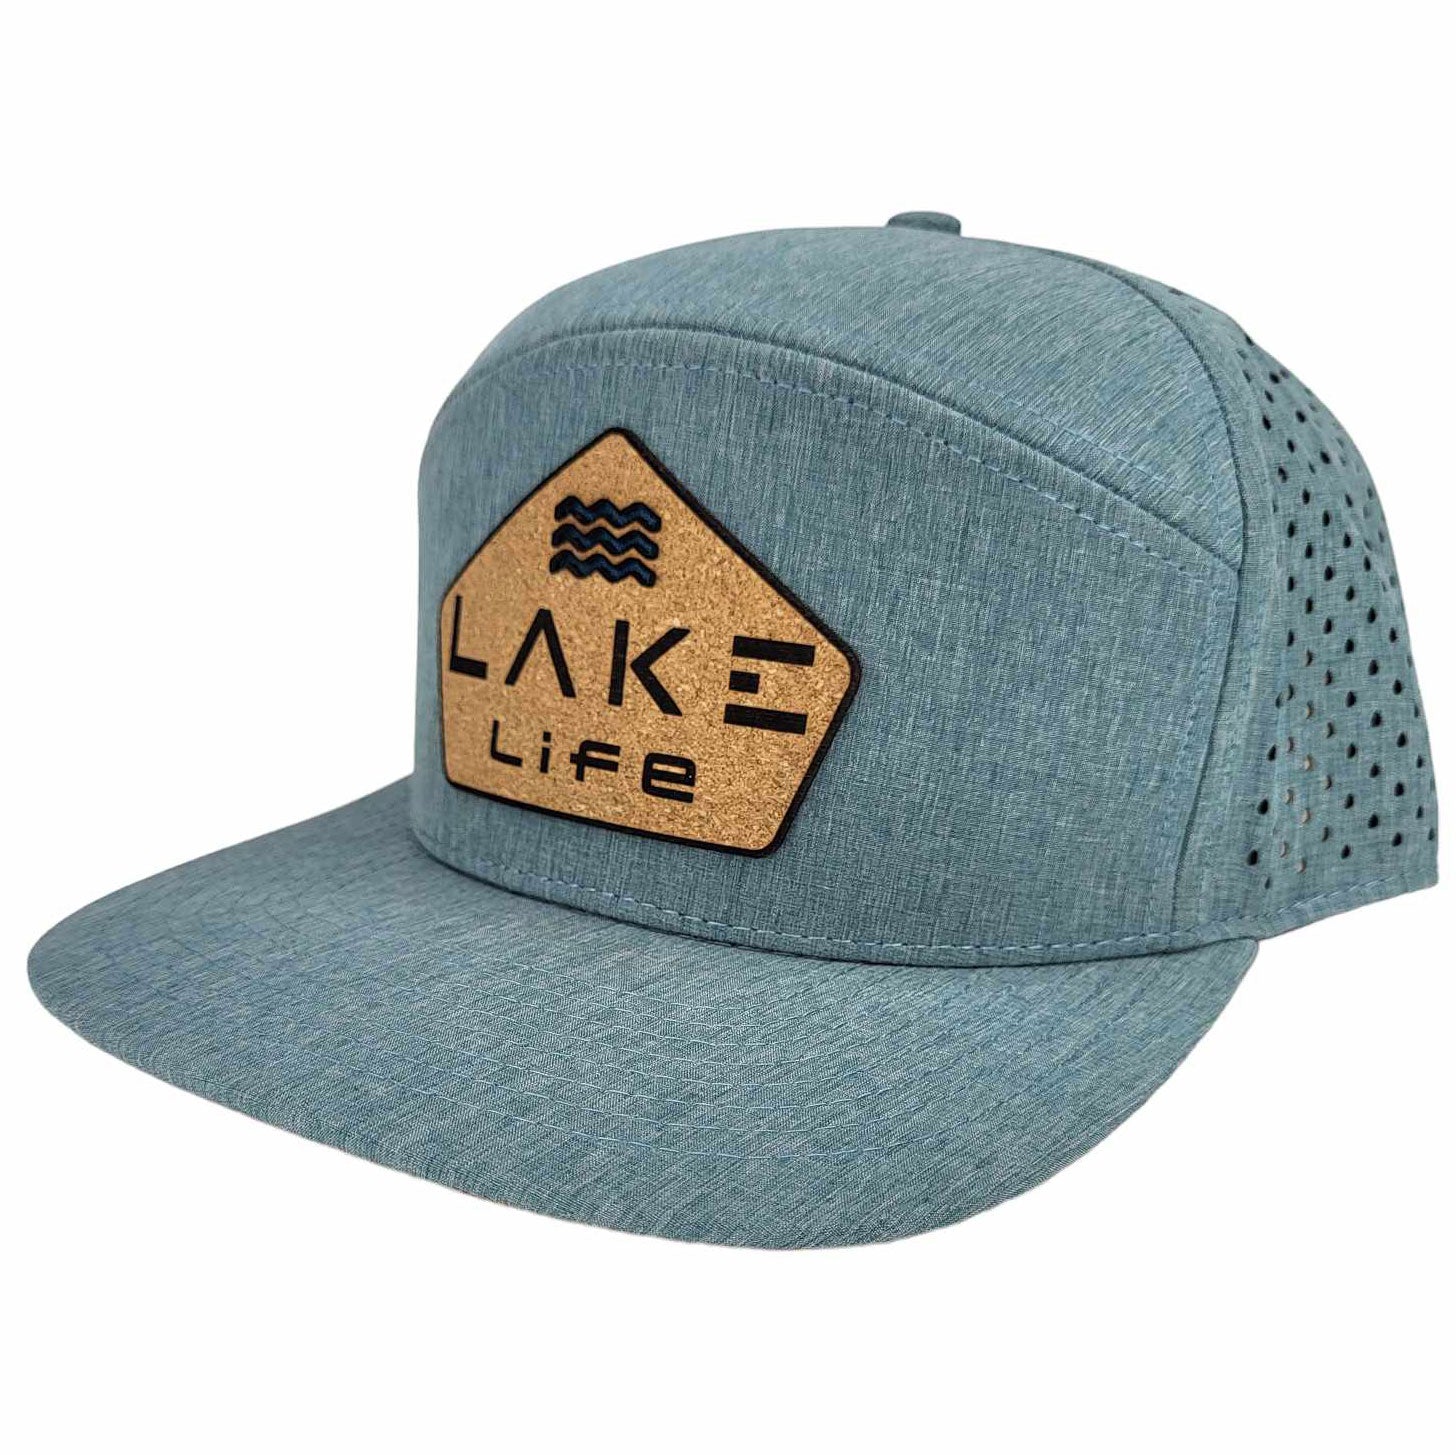 Lake Life Cork Hat